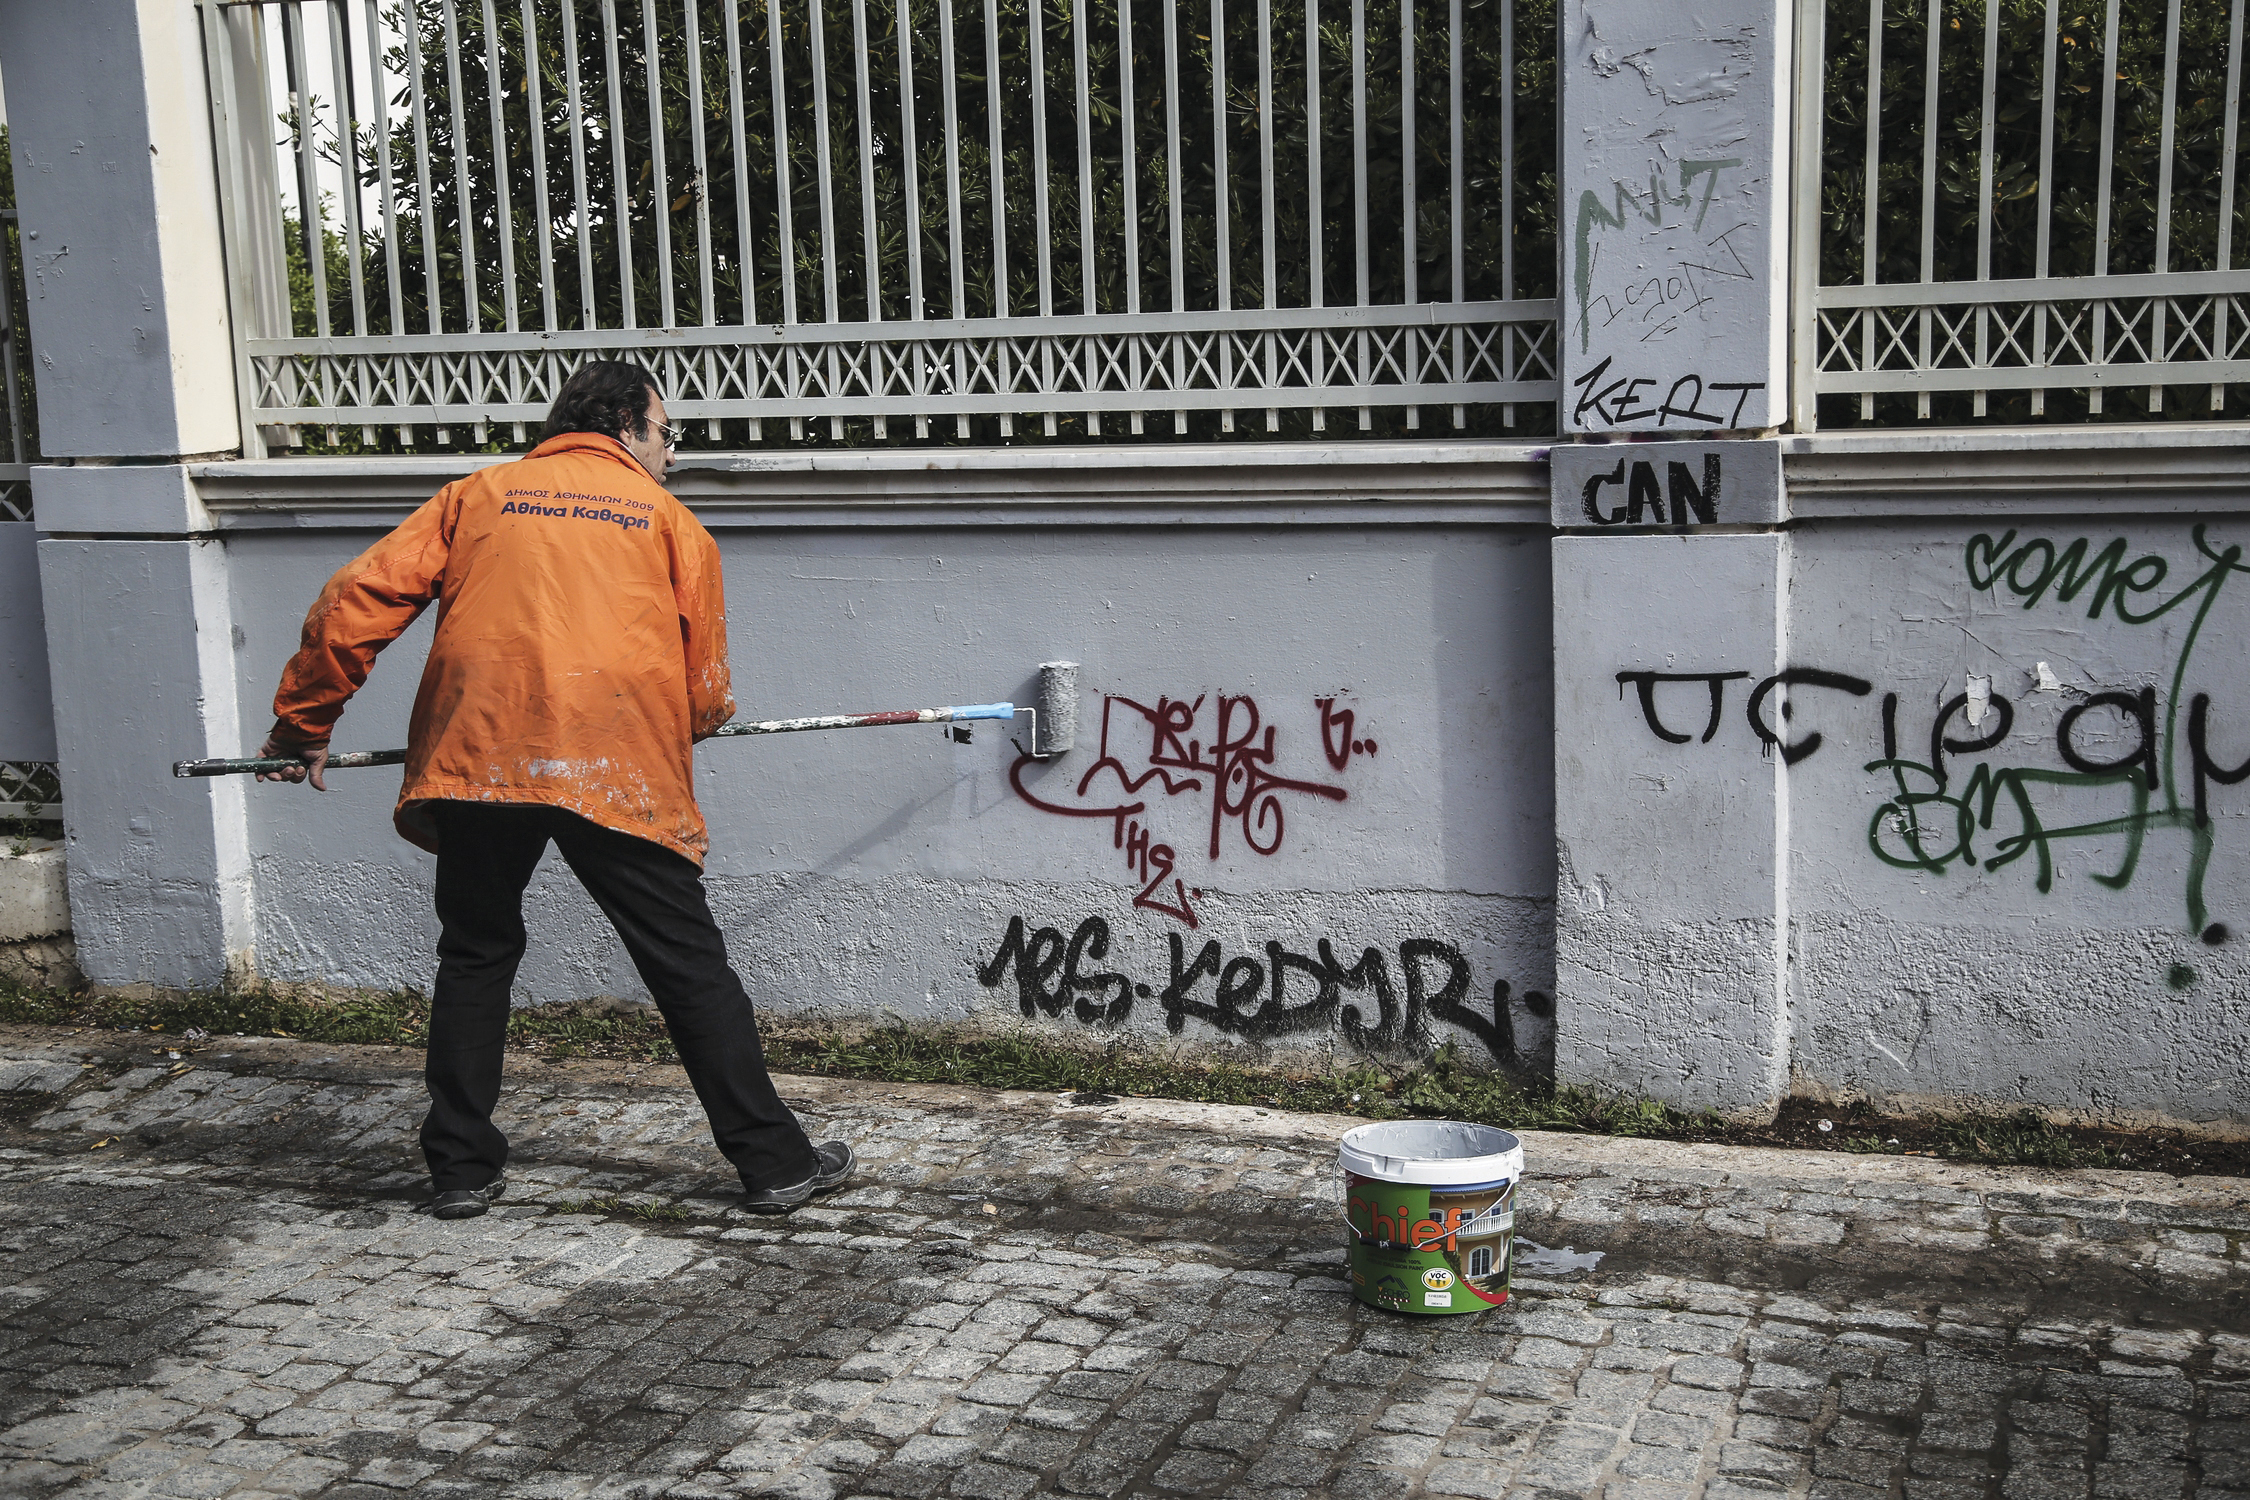 Αύριο γίνεται εκστρατεία καθαρισμού αφίσας, αυτοκολλήτων και γκράφιτι στη Λάρνακα